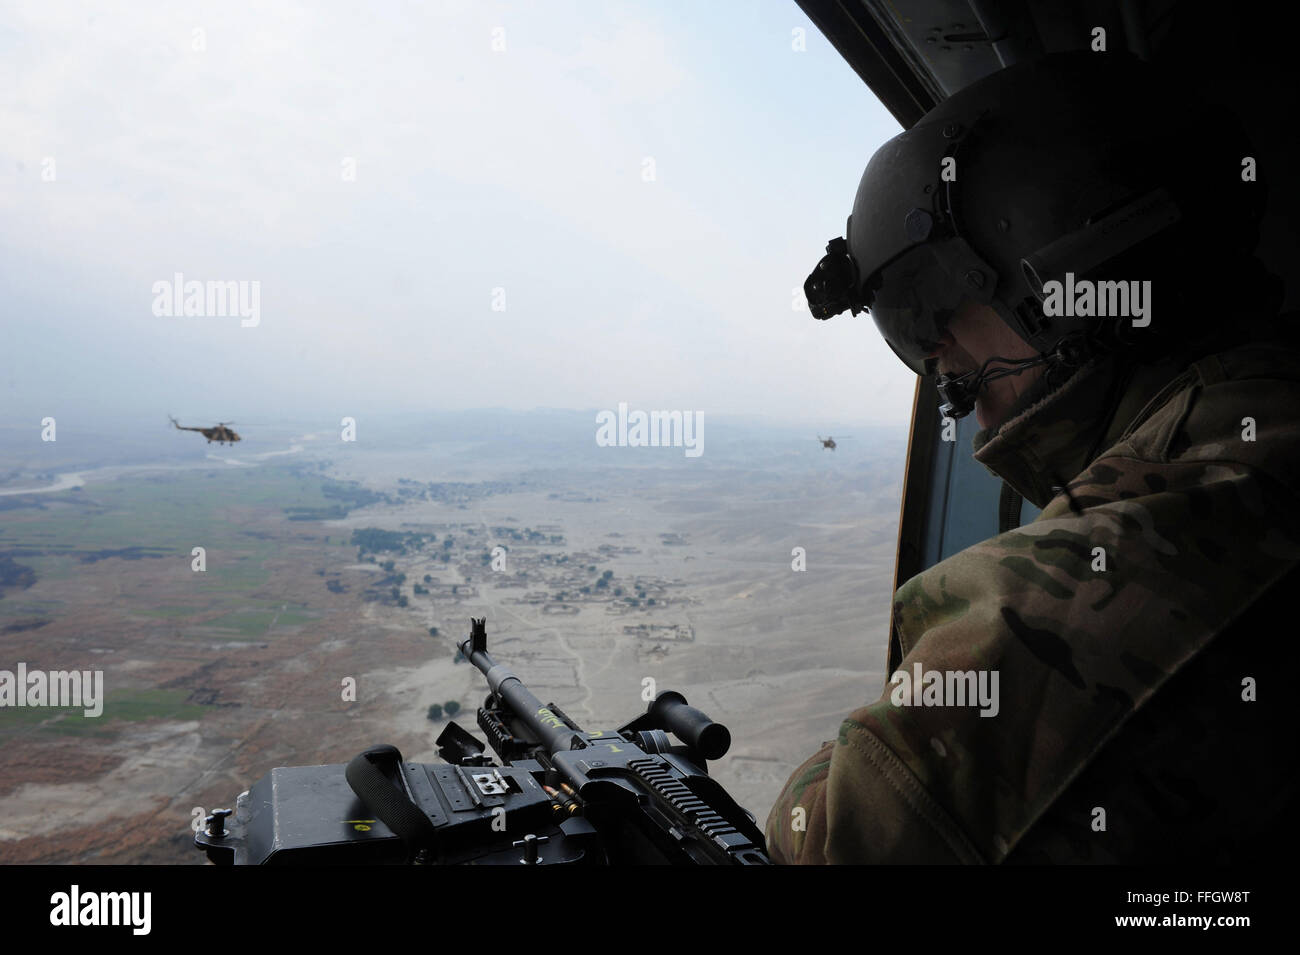 Senior Master Sgt. Todd Peplow, eine Antenne Schütze mit der 438th Air Expeditionary Advisory Squadron, bietet Support für Gunner auf einer afghanischen Luftwaffe MI-17 während eines Fluges über Afghanistan. Peplow ist derzeit eingesetzt, um AAF Flugingenieure am internationalen Flughafen von Kabul beratenden auszubilden. Stockfoto